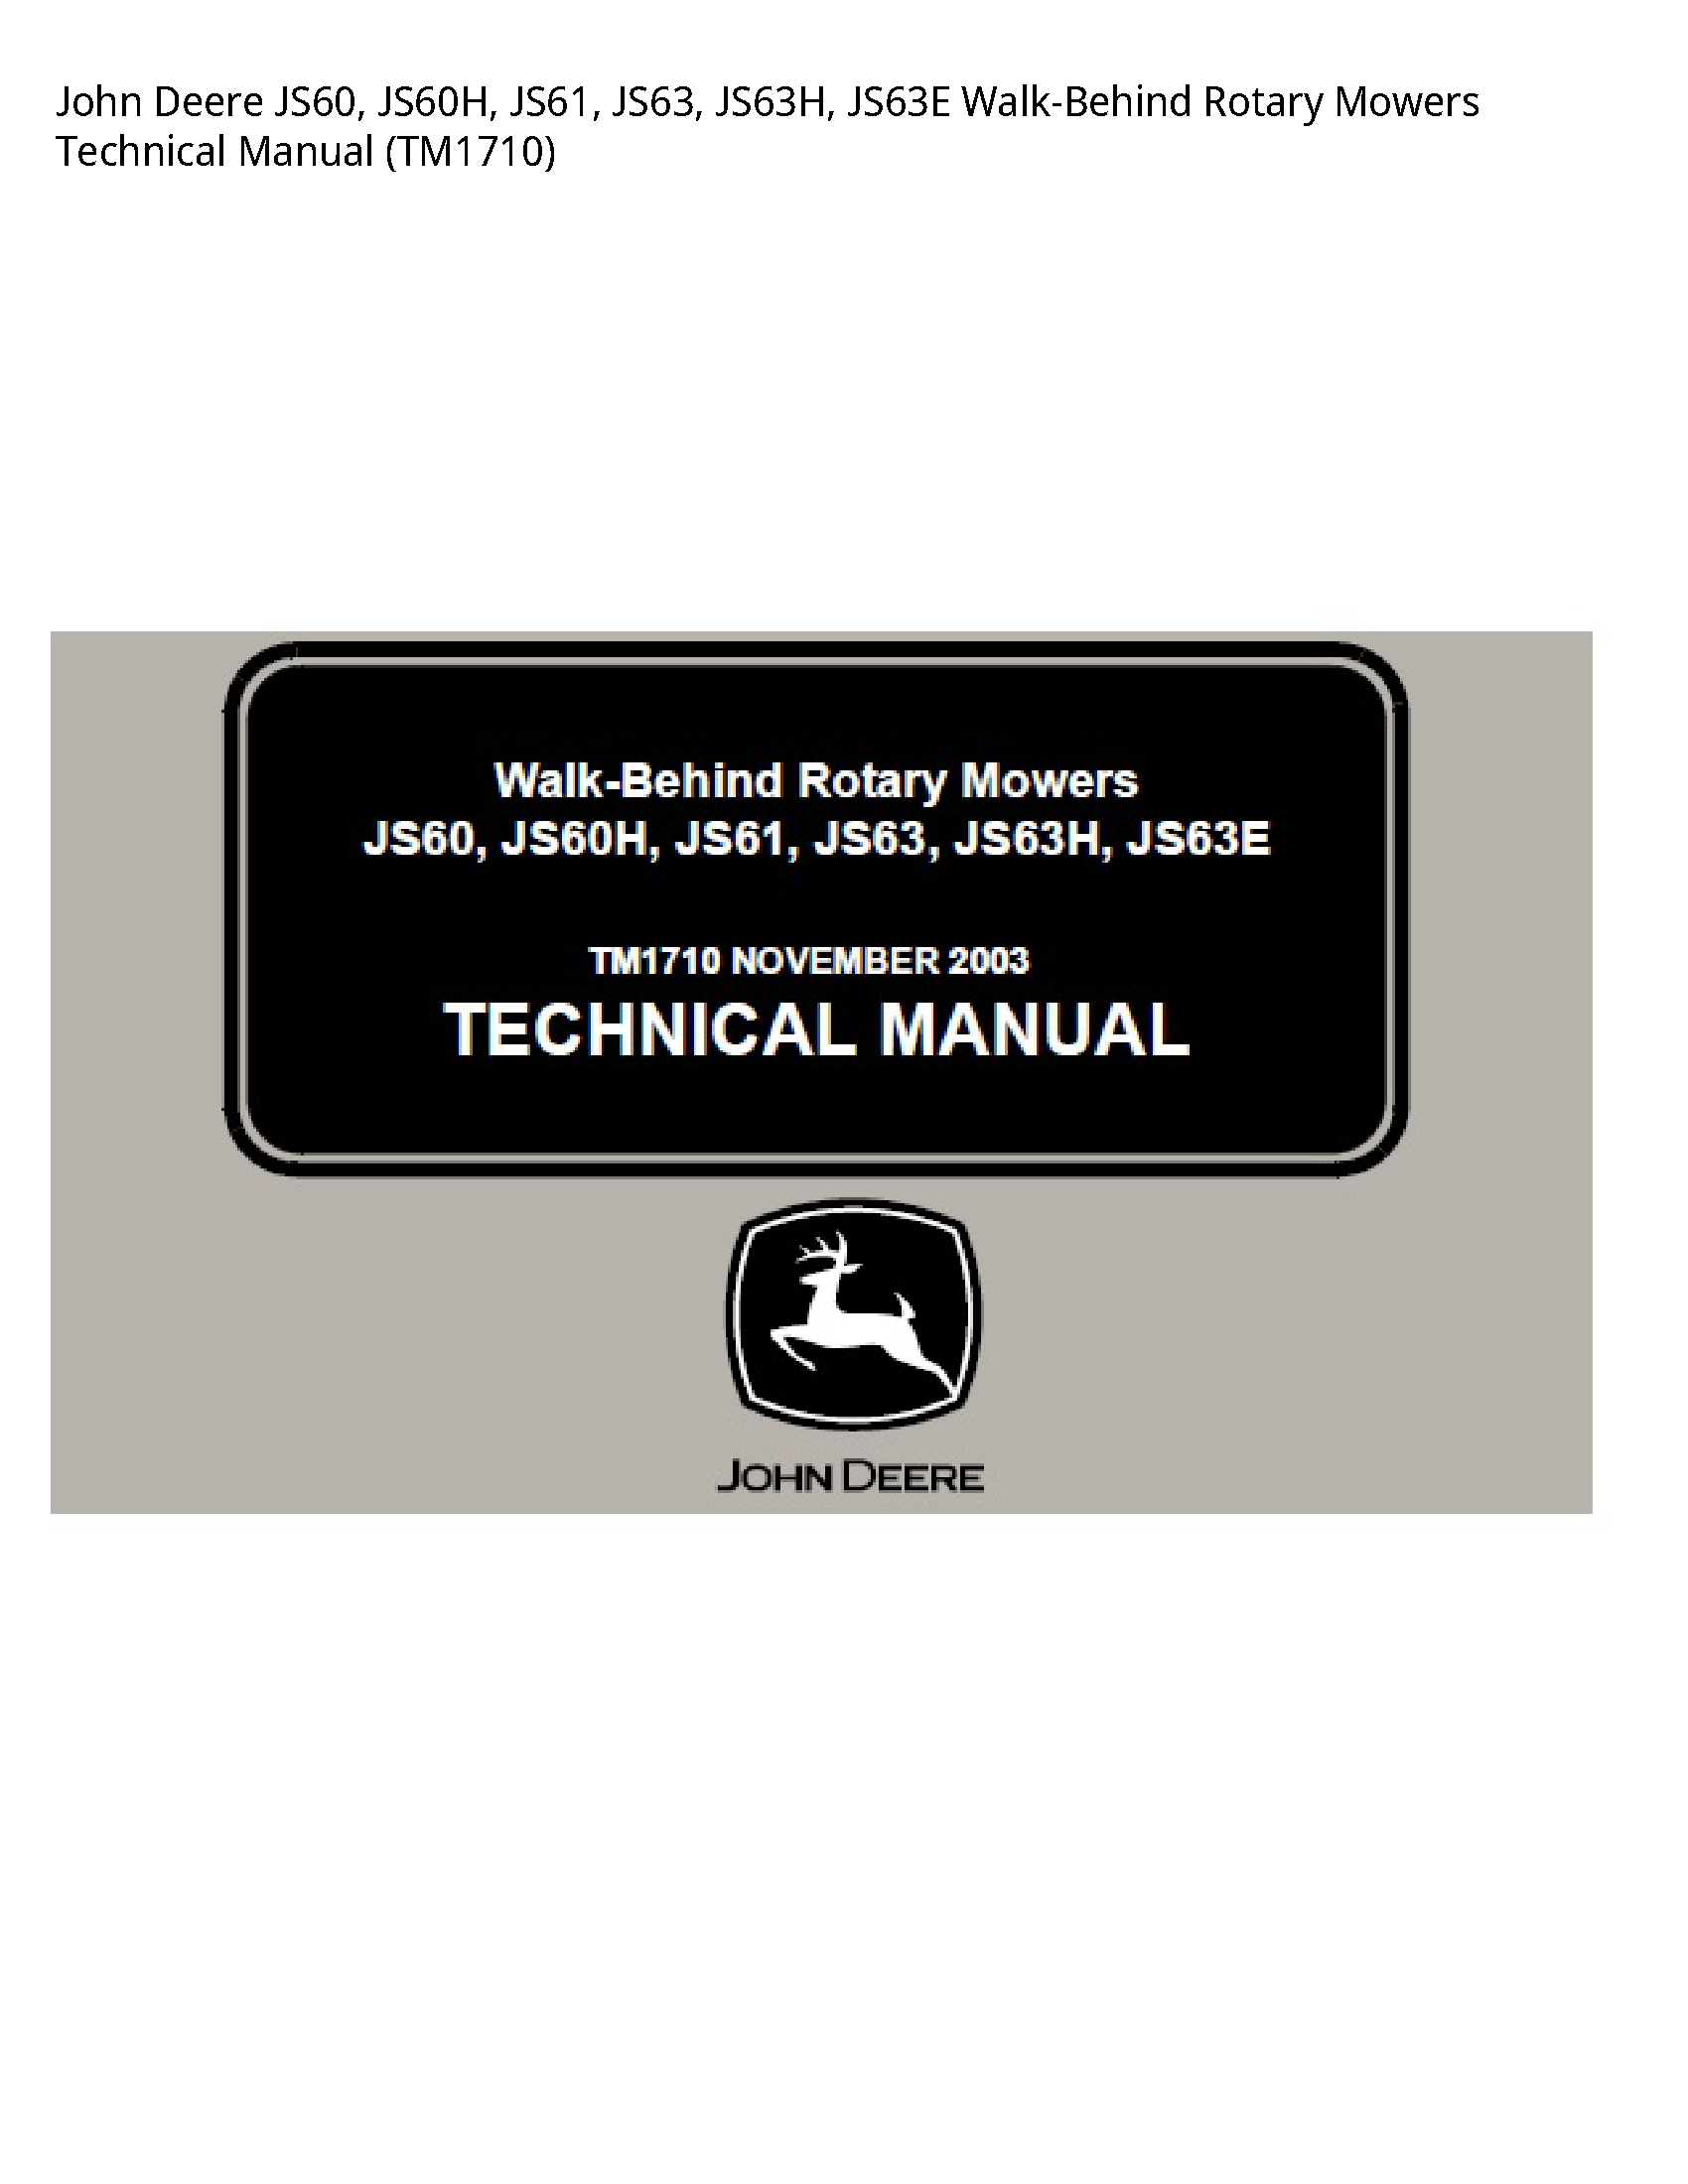 John Deere JS60 Walk-Behind Rotary Mowers Technical manual